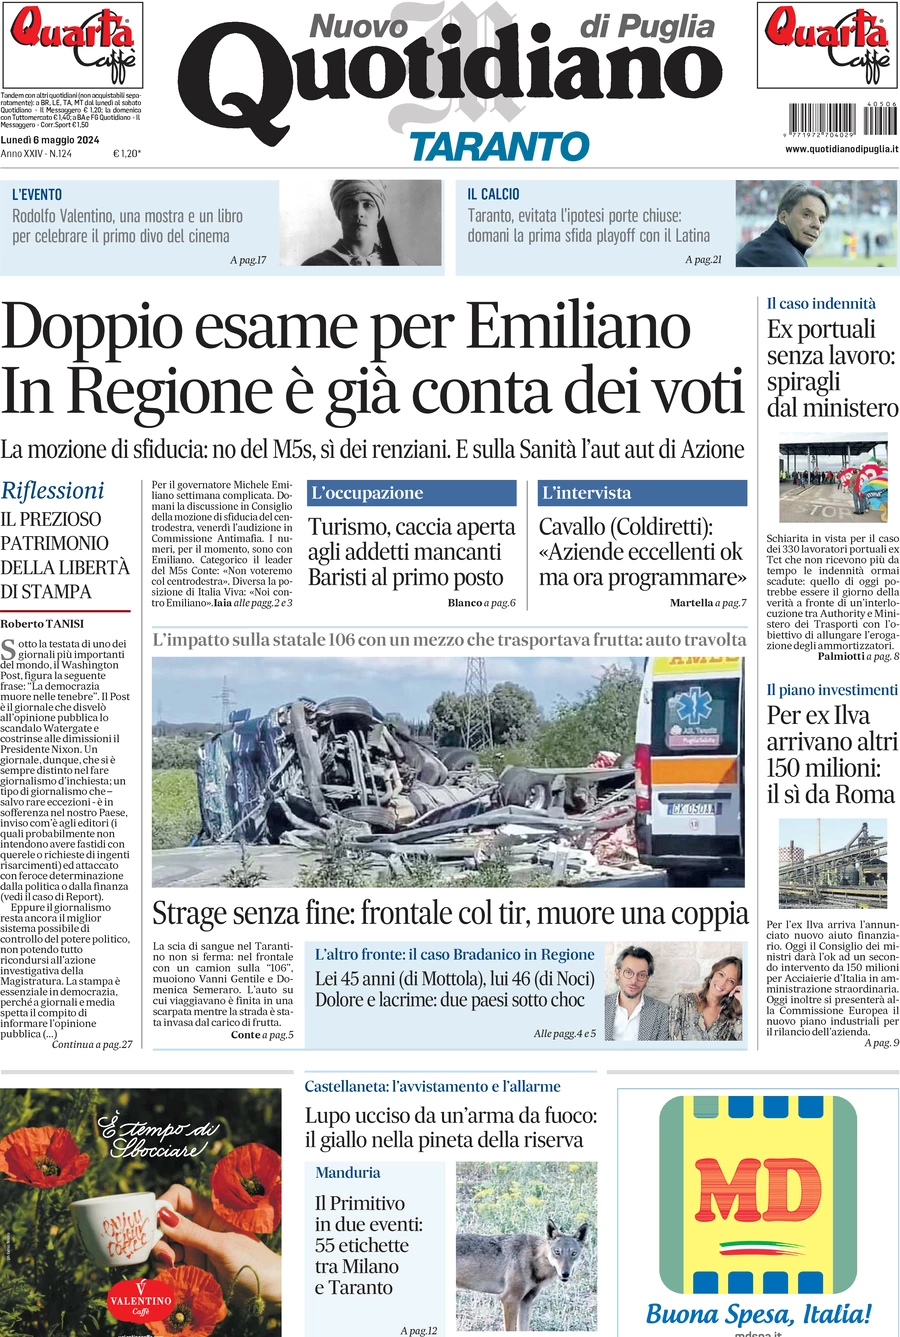 anteprima della prima pagina di Nuovo Quotidiano di Puglia (Taranto)